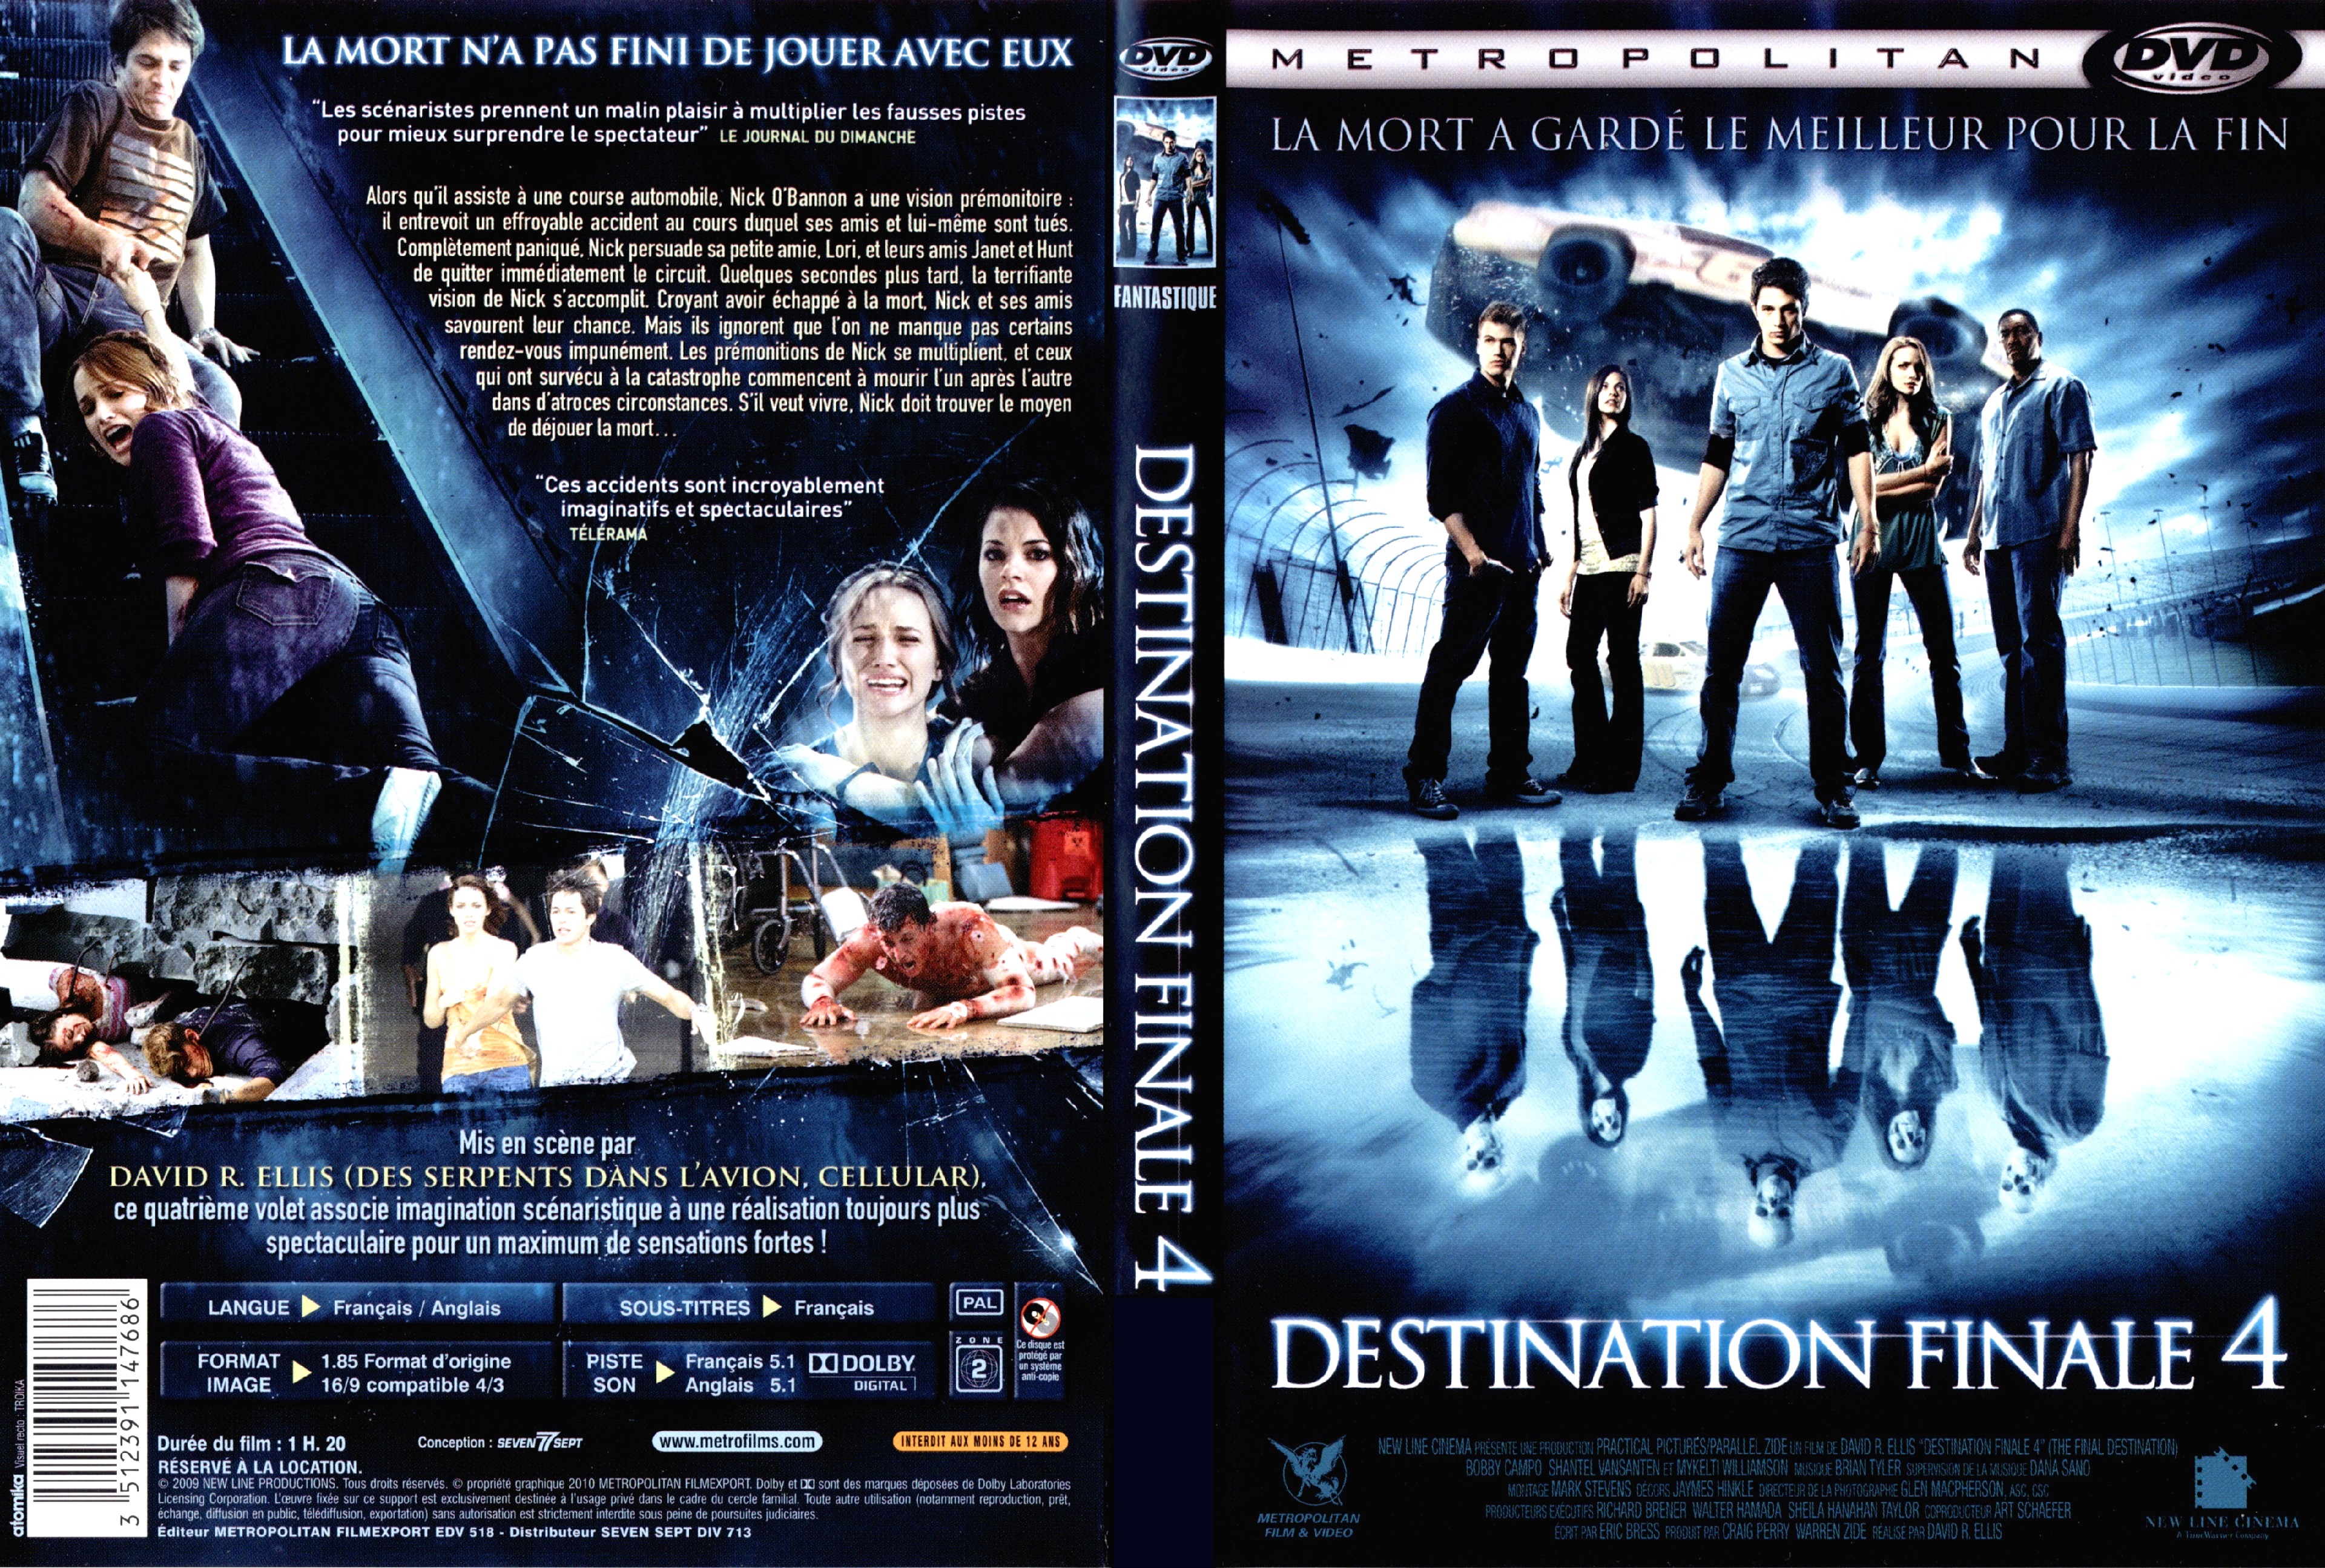 Jaquette DVD Destination finale 4